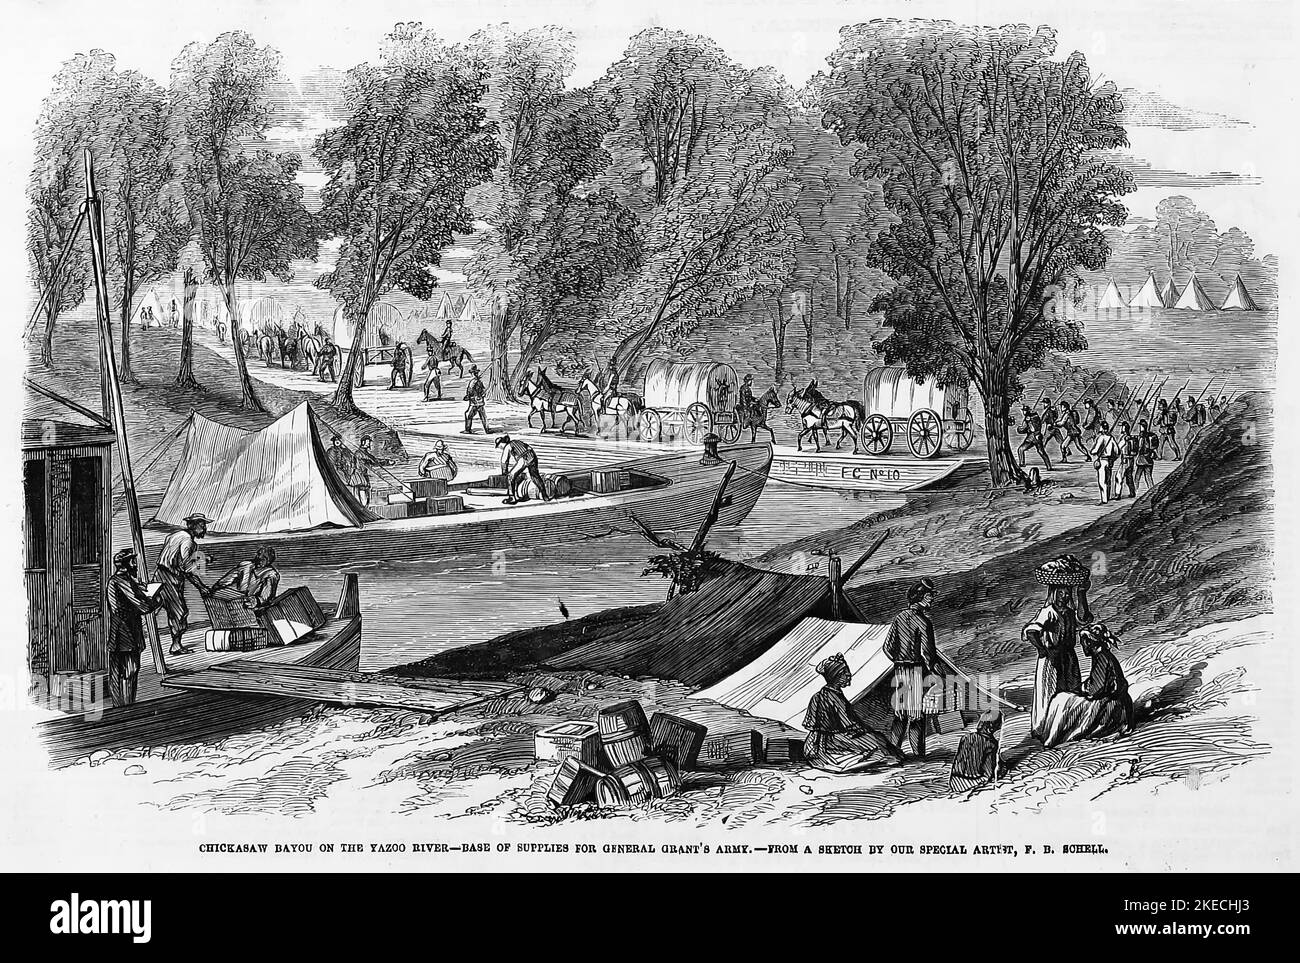 Chickasaw Bayou sul fiume Yazoo, Mississippi - base di rifornimento per l'esercito del generale Ulysses S. Grant. Giugno 1863. Illustrazione della guerra civile americana del 19th° secolo dal quotidiano illustrato di Frank Leslie Foto Stock